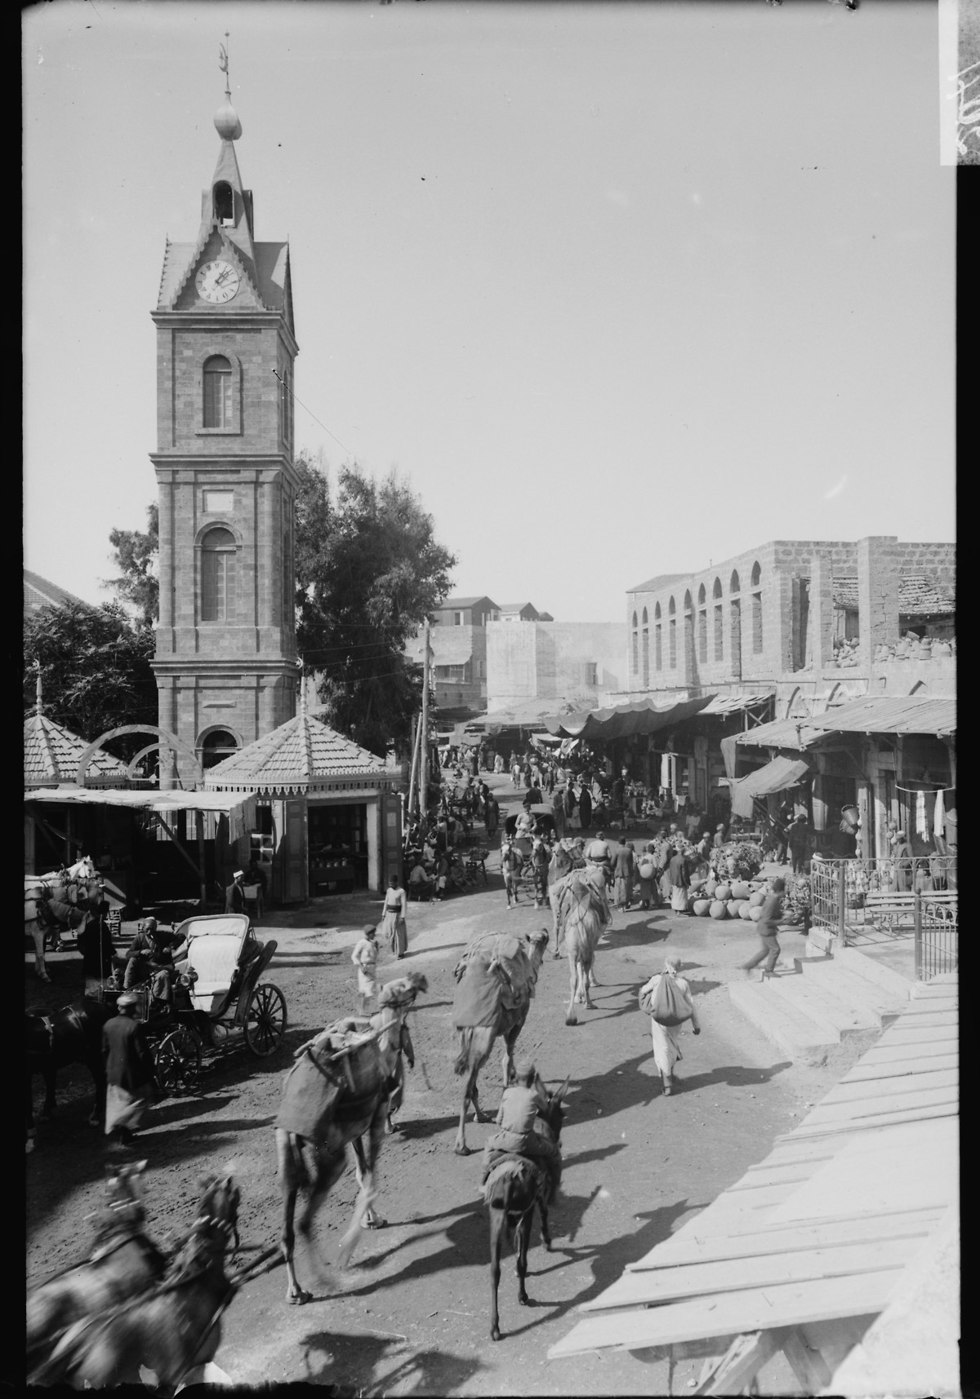 כיכר השעון ומגדל השעון, שנה לא ידועה (בין 1898-1920) (צילום: אוסף אריק מאטסון)